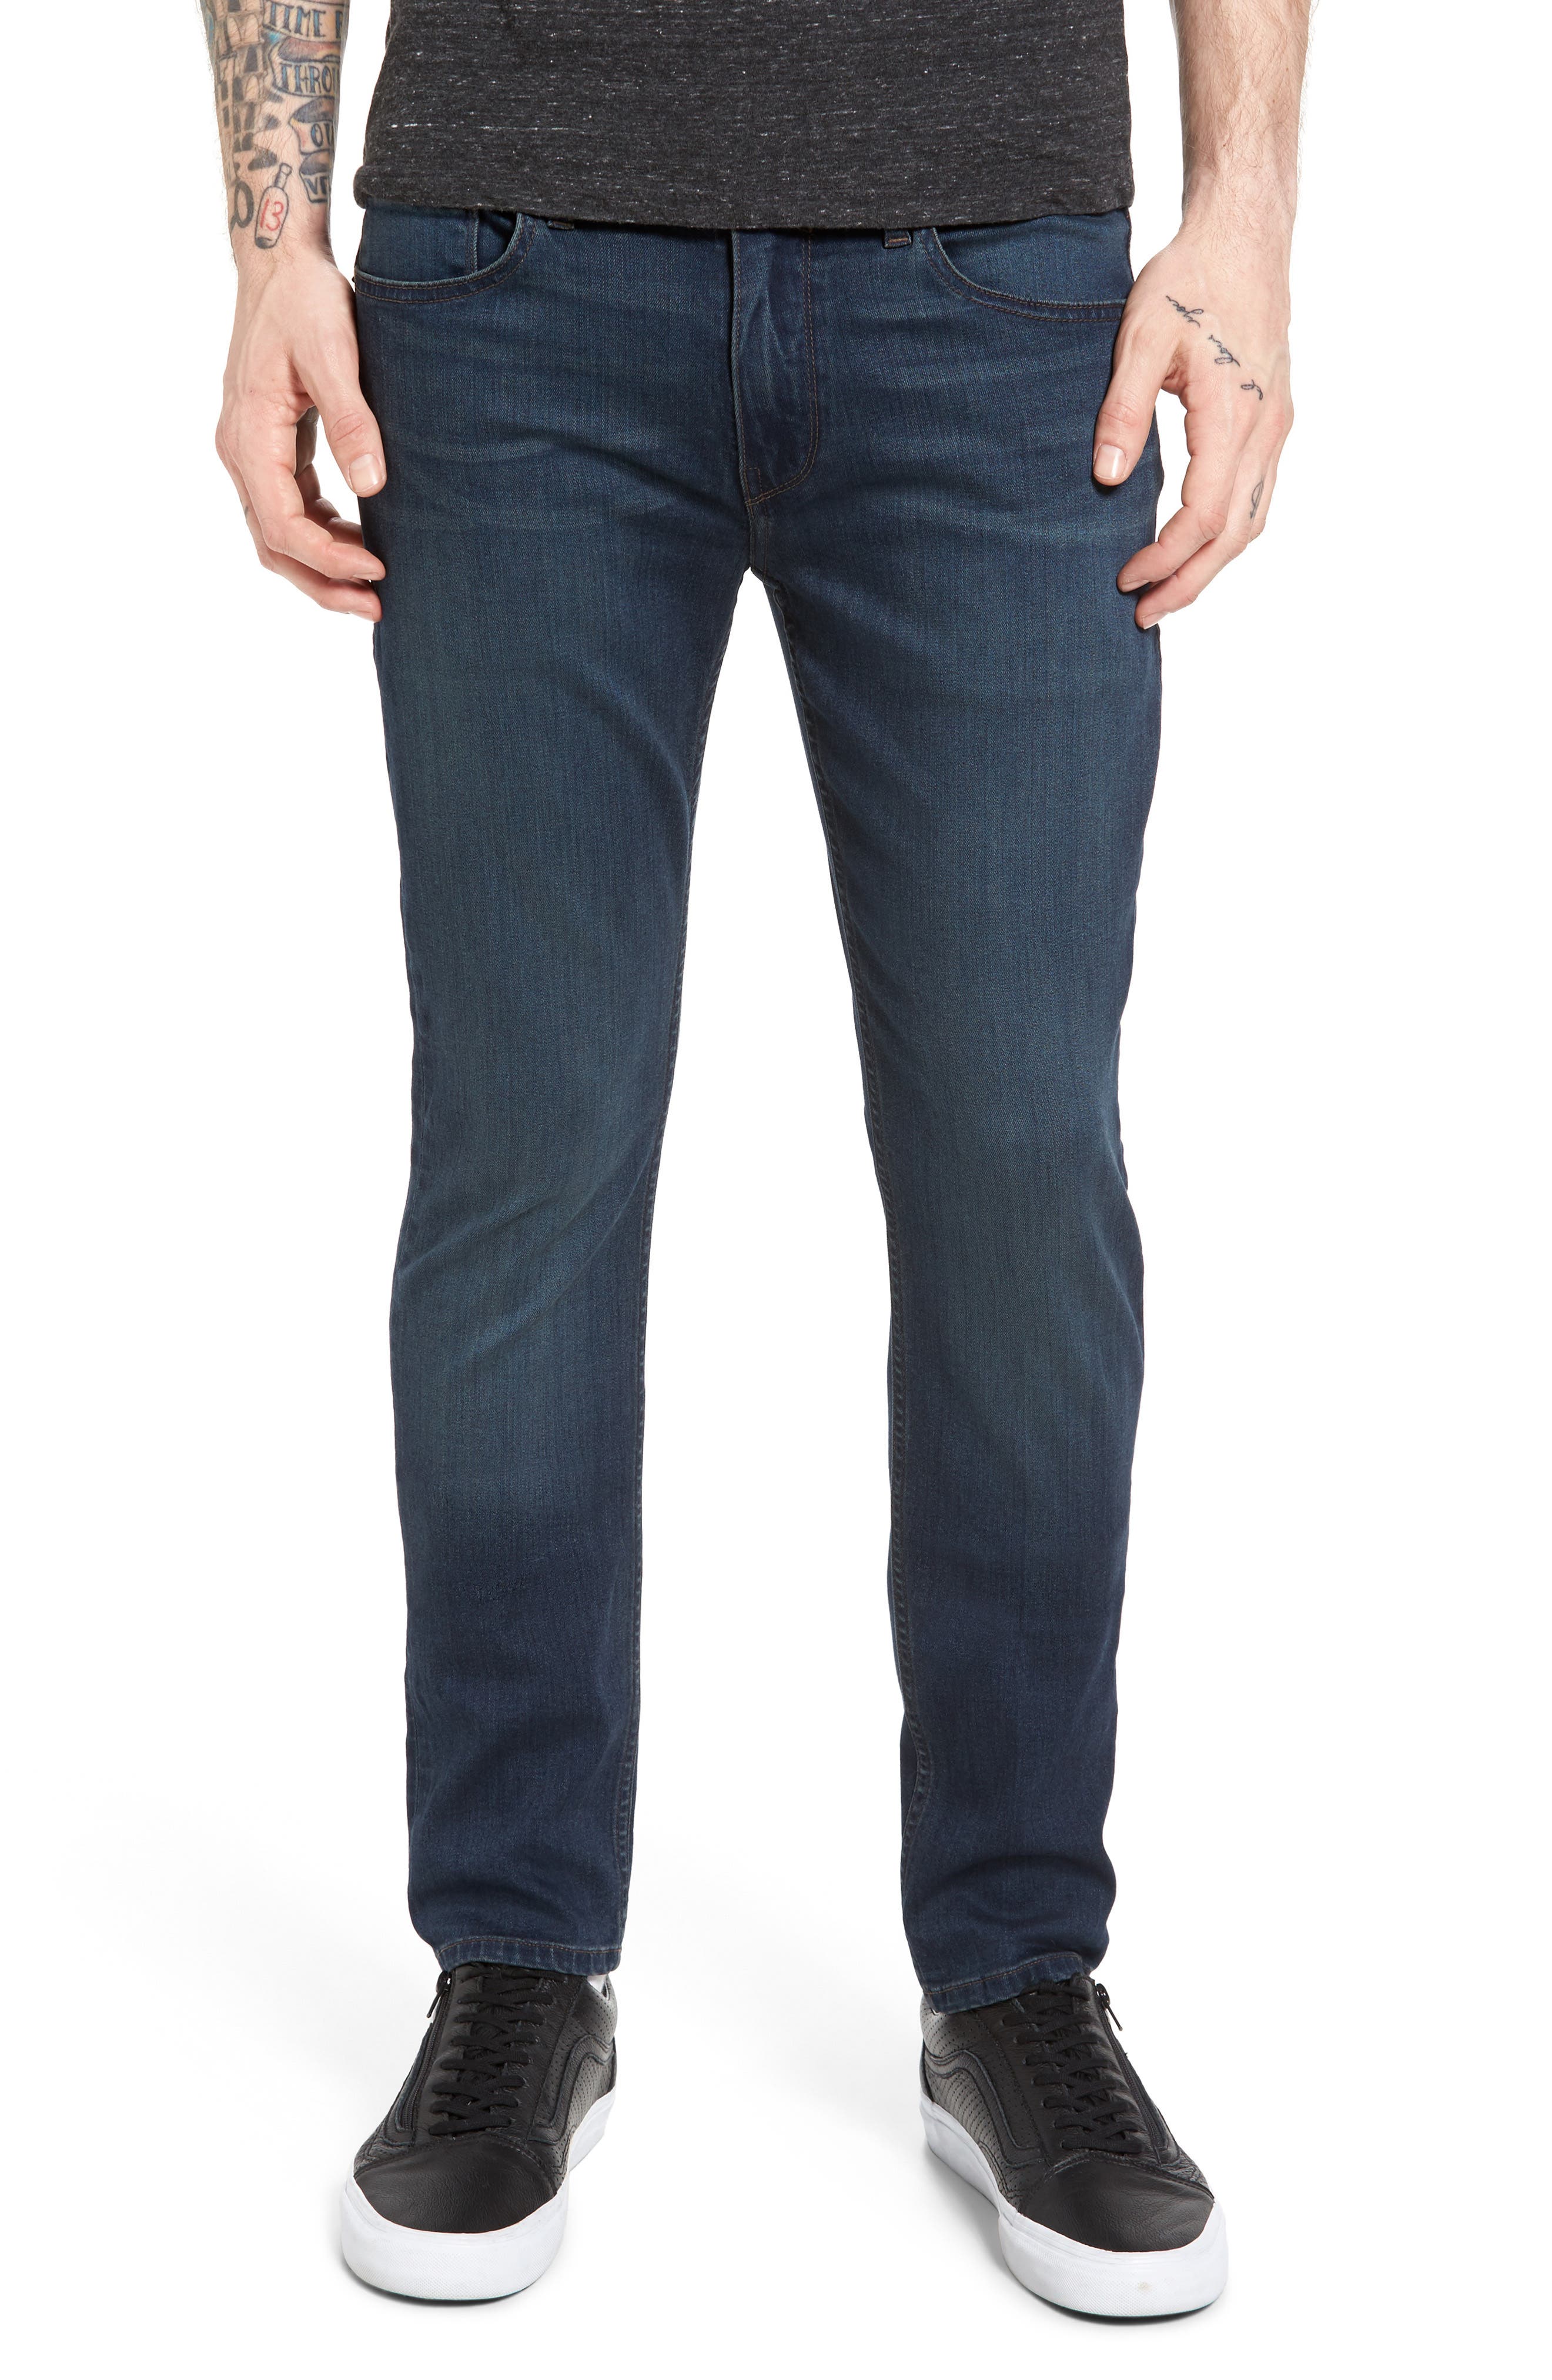 paige croft jeans